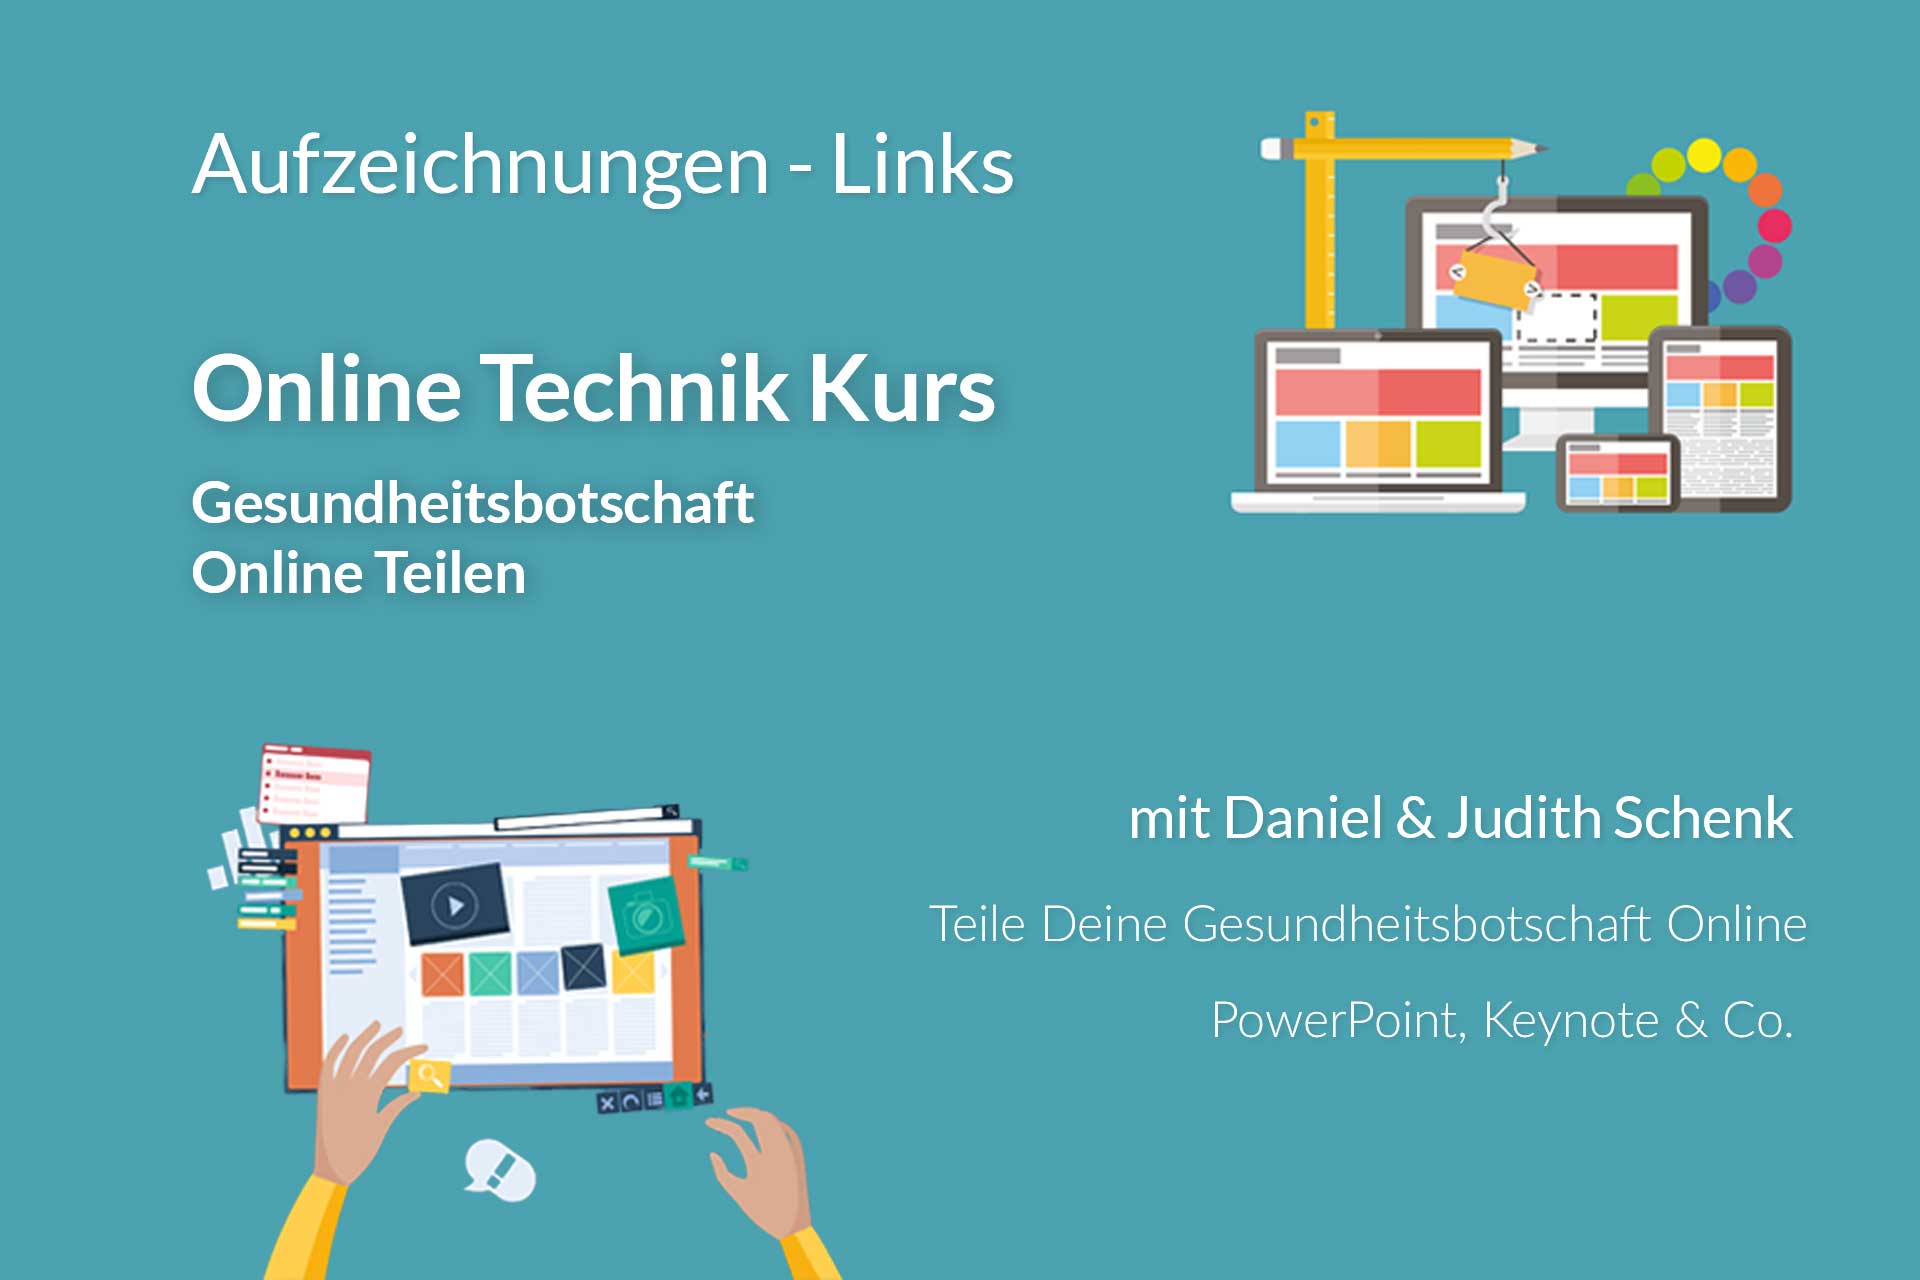 ebotschafter.com - Daniel Schenk - Online Technik Kurs - Vorschau Präsentationen - Aufzeichnungen